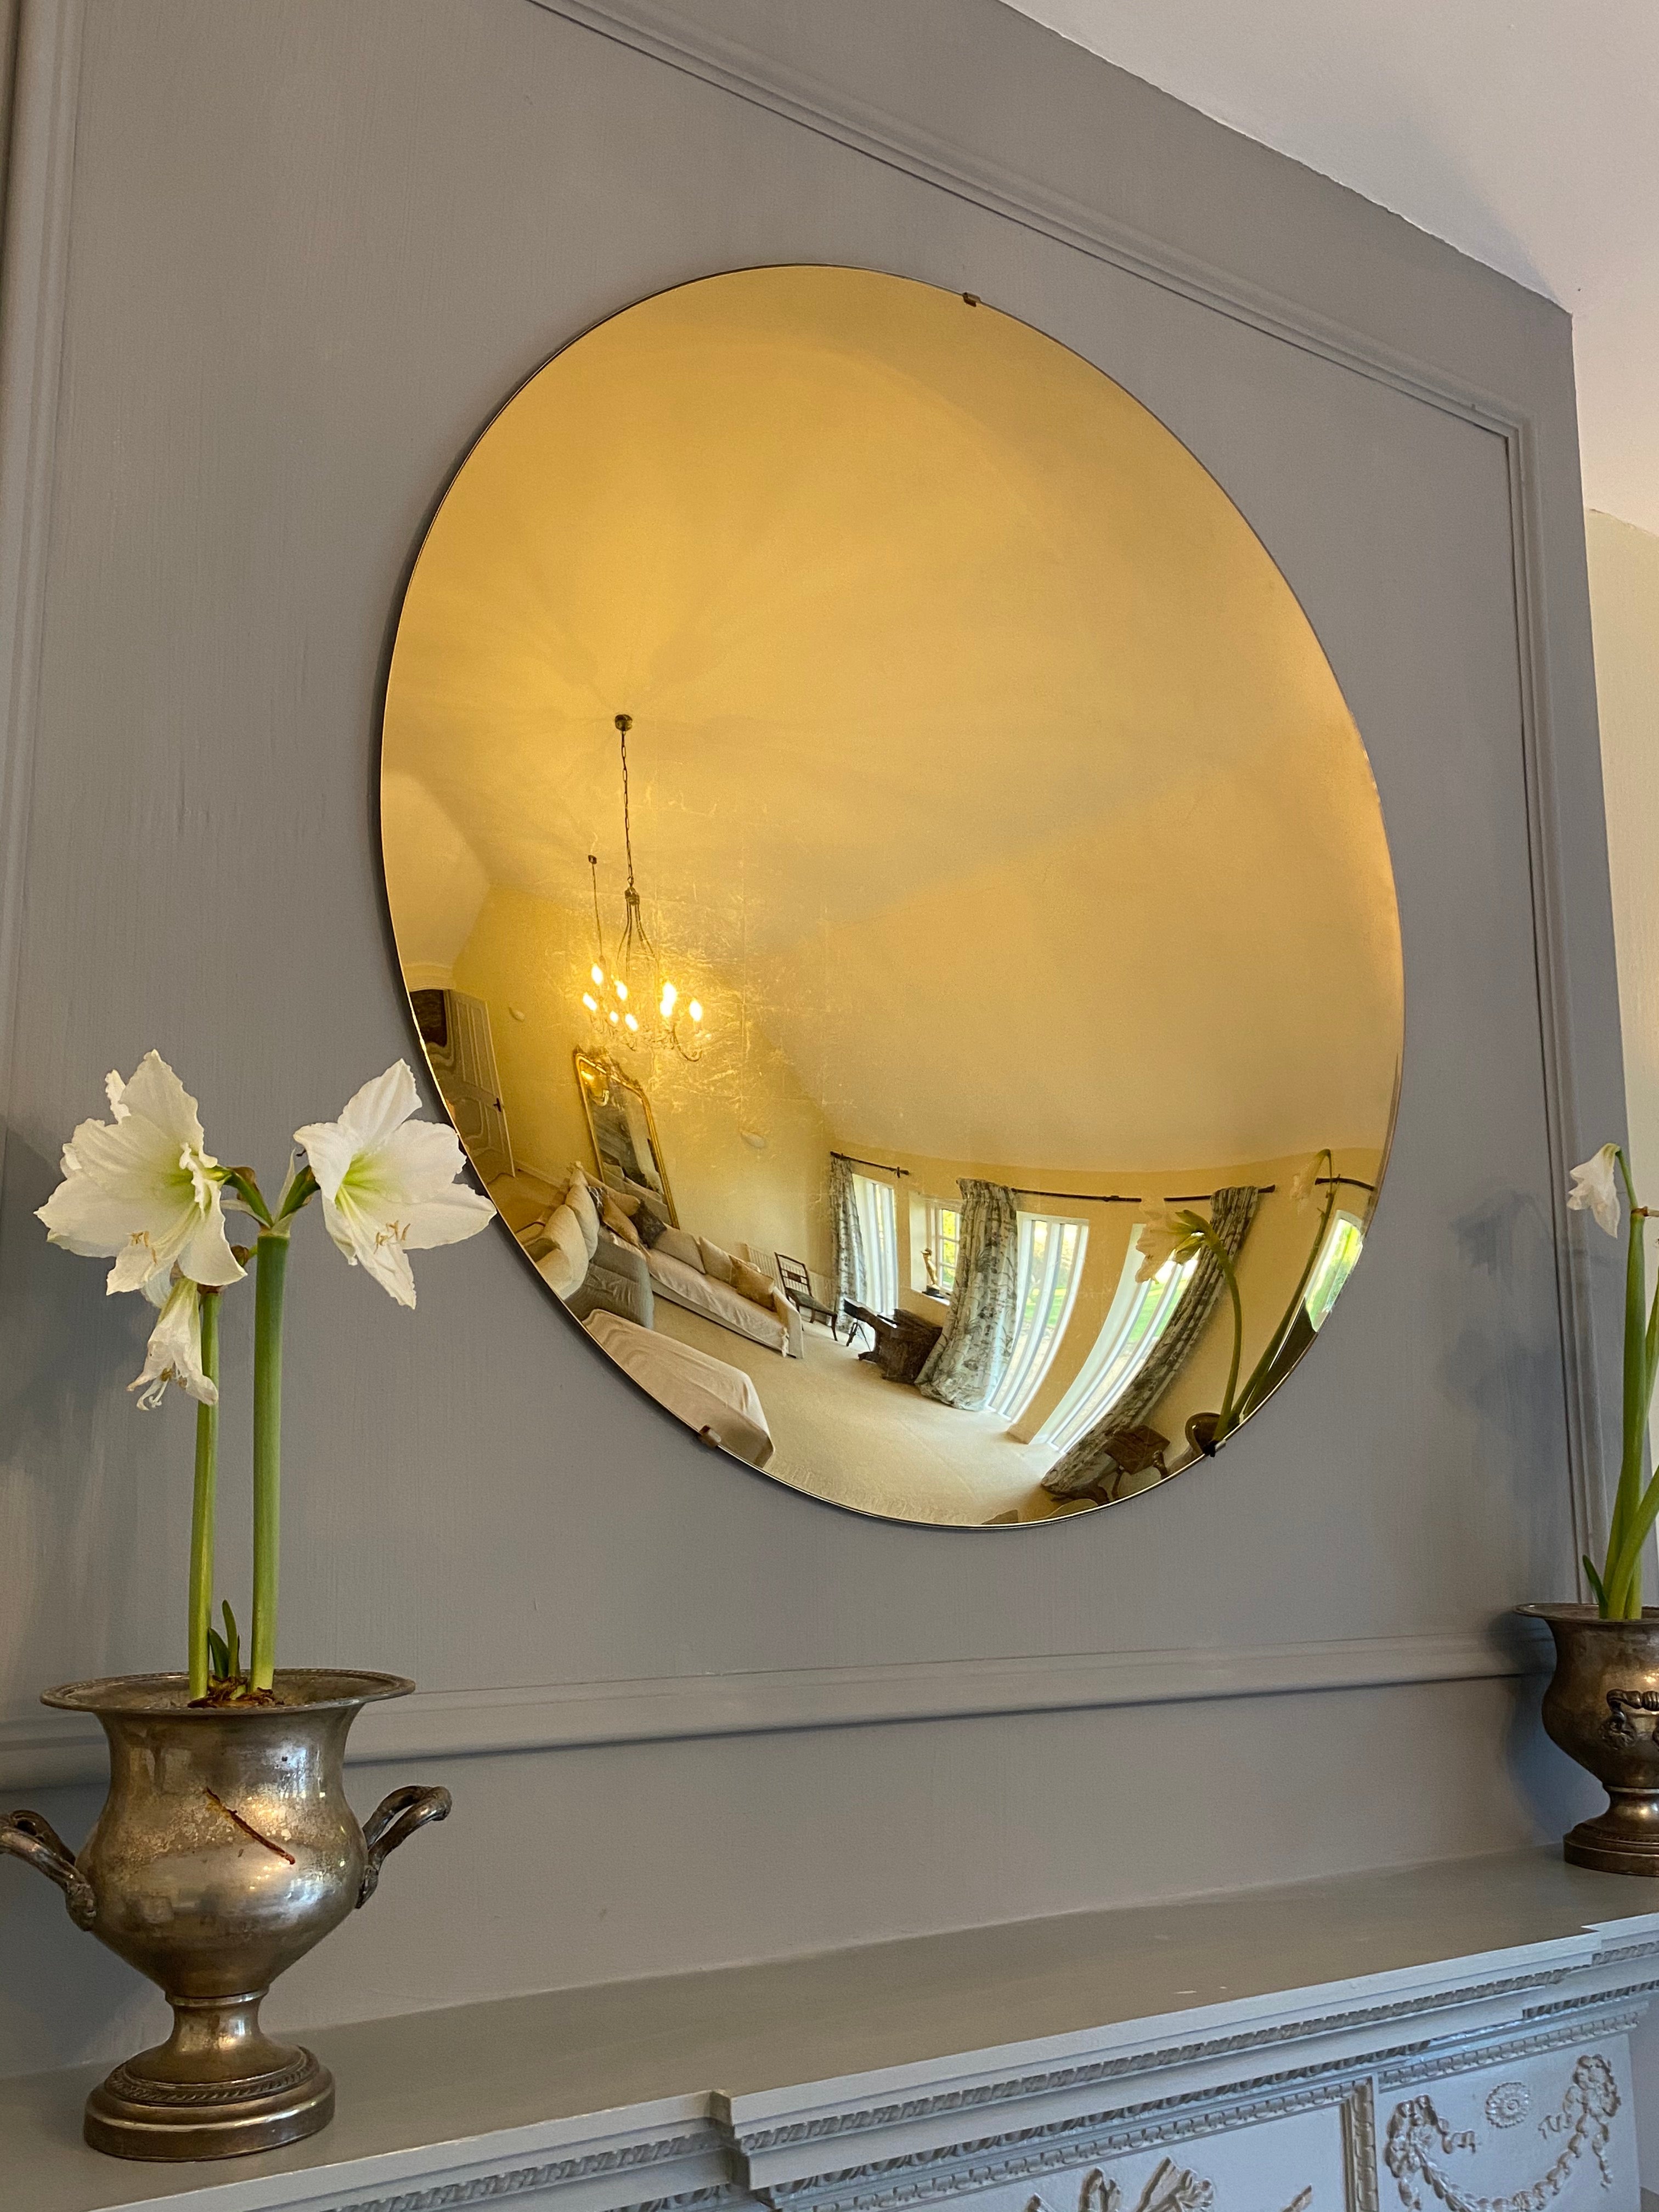 Le miroir mural convexe en verre Varenna est fabriqué à partir de verre à faible teneur en fer de 6 mm pour une clarté accrue. Verre églomisé est un terme français signifiant verre doré, est un procédé dans lequel le dos du verre est doré avec de